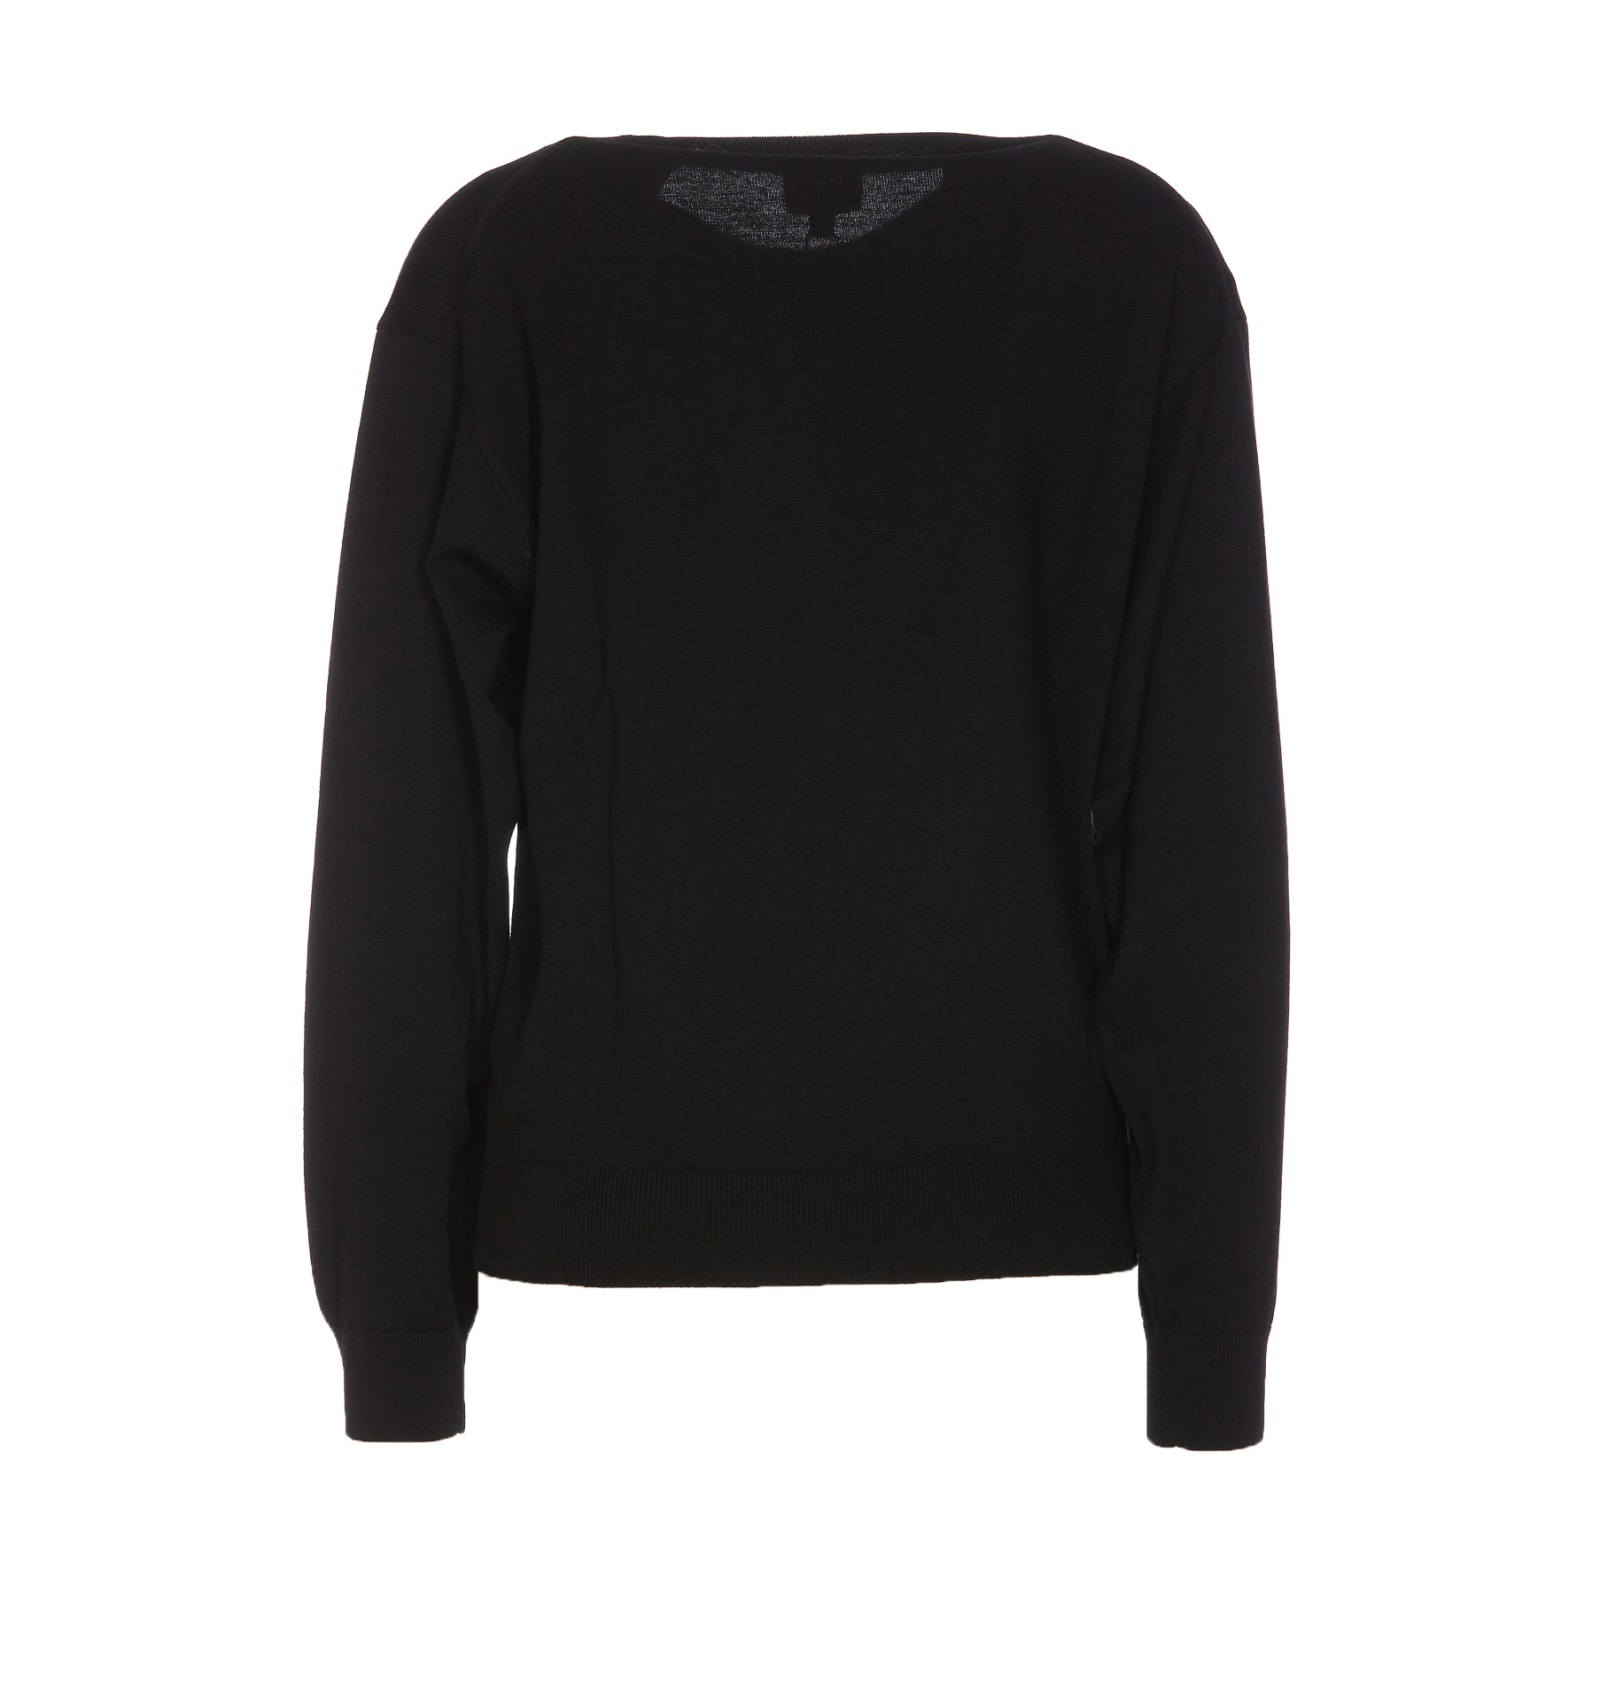 Shop Kenzo Boke Crest Sweater In Black